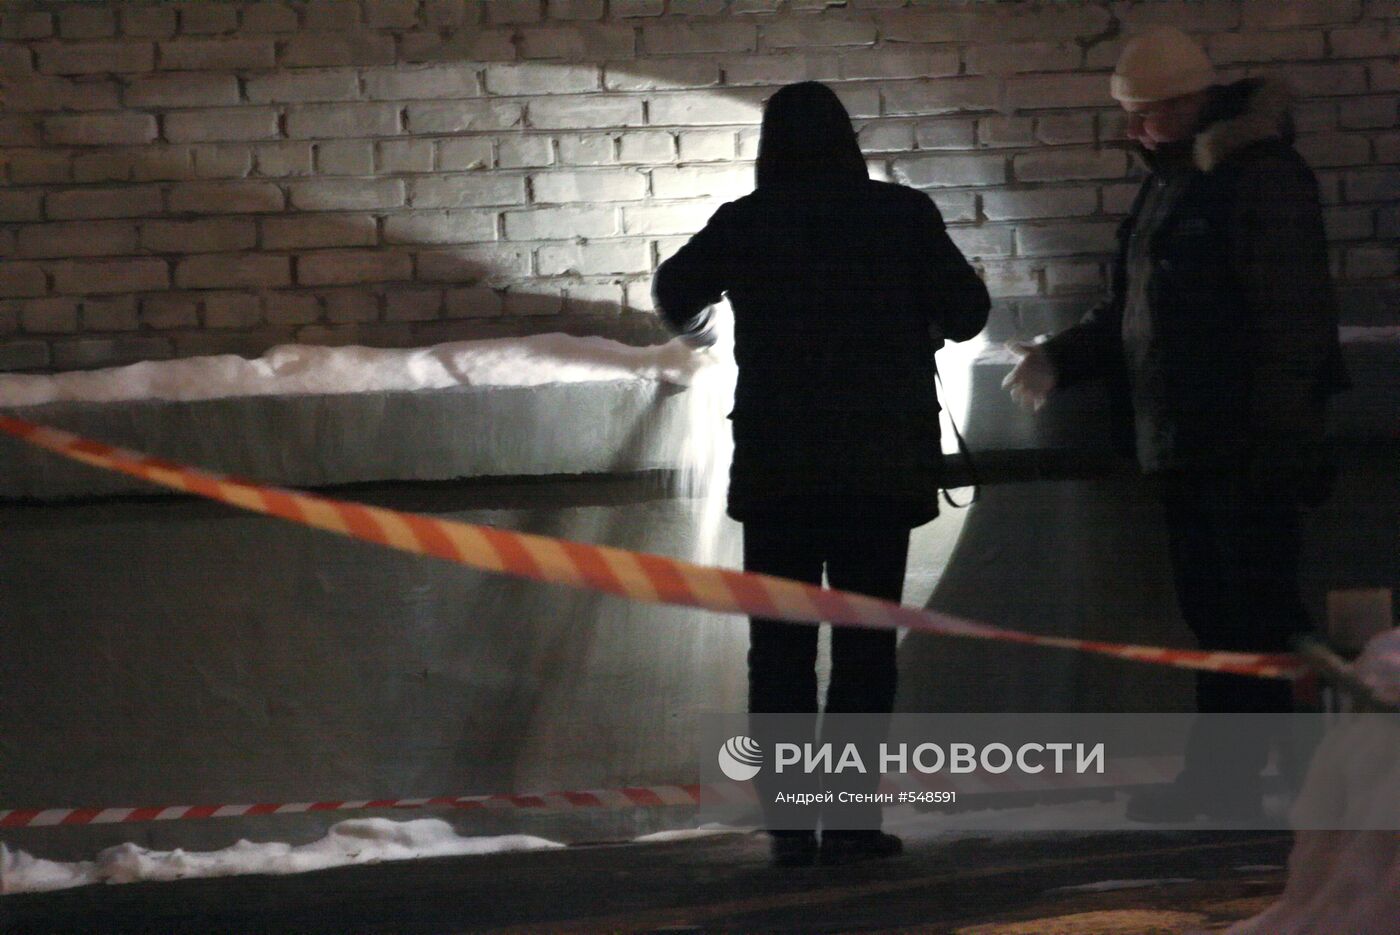 Мужчина расстрелян возле станции метро "Университет"